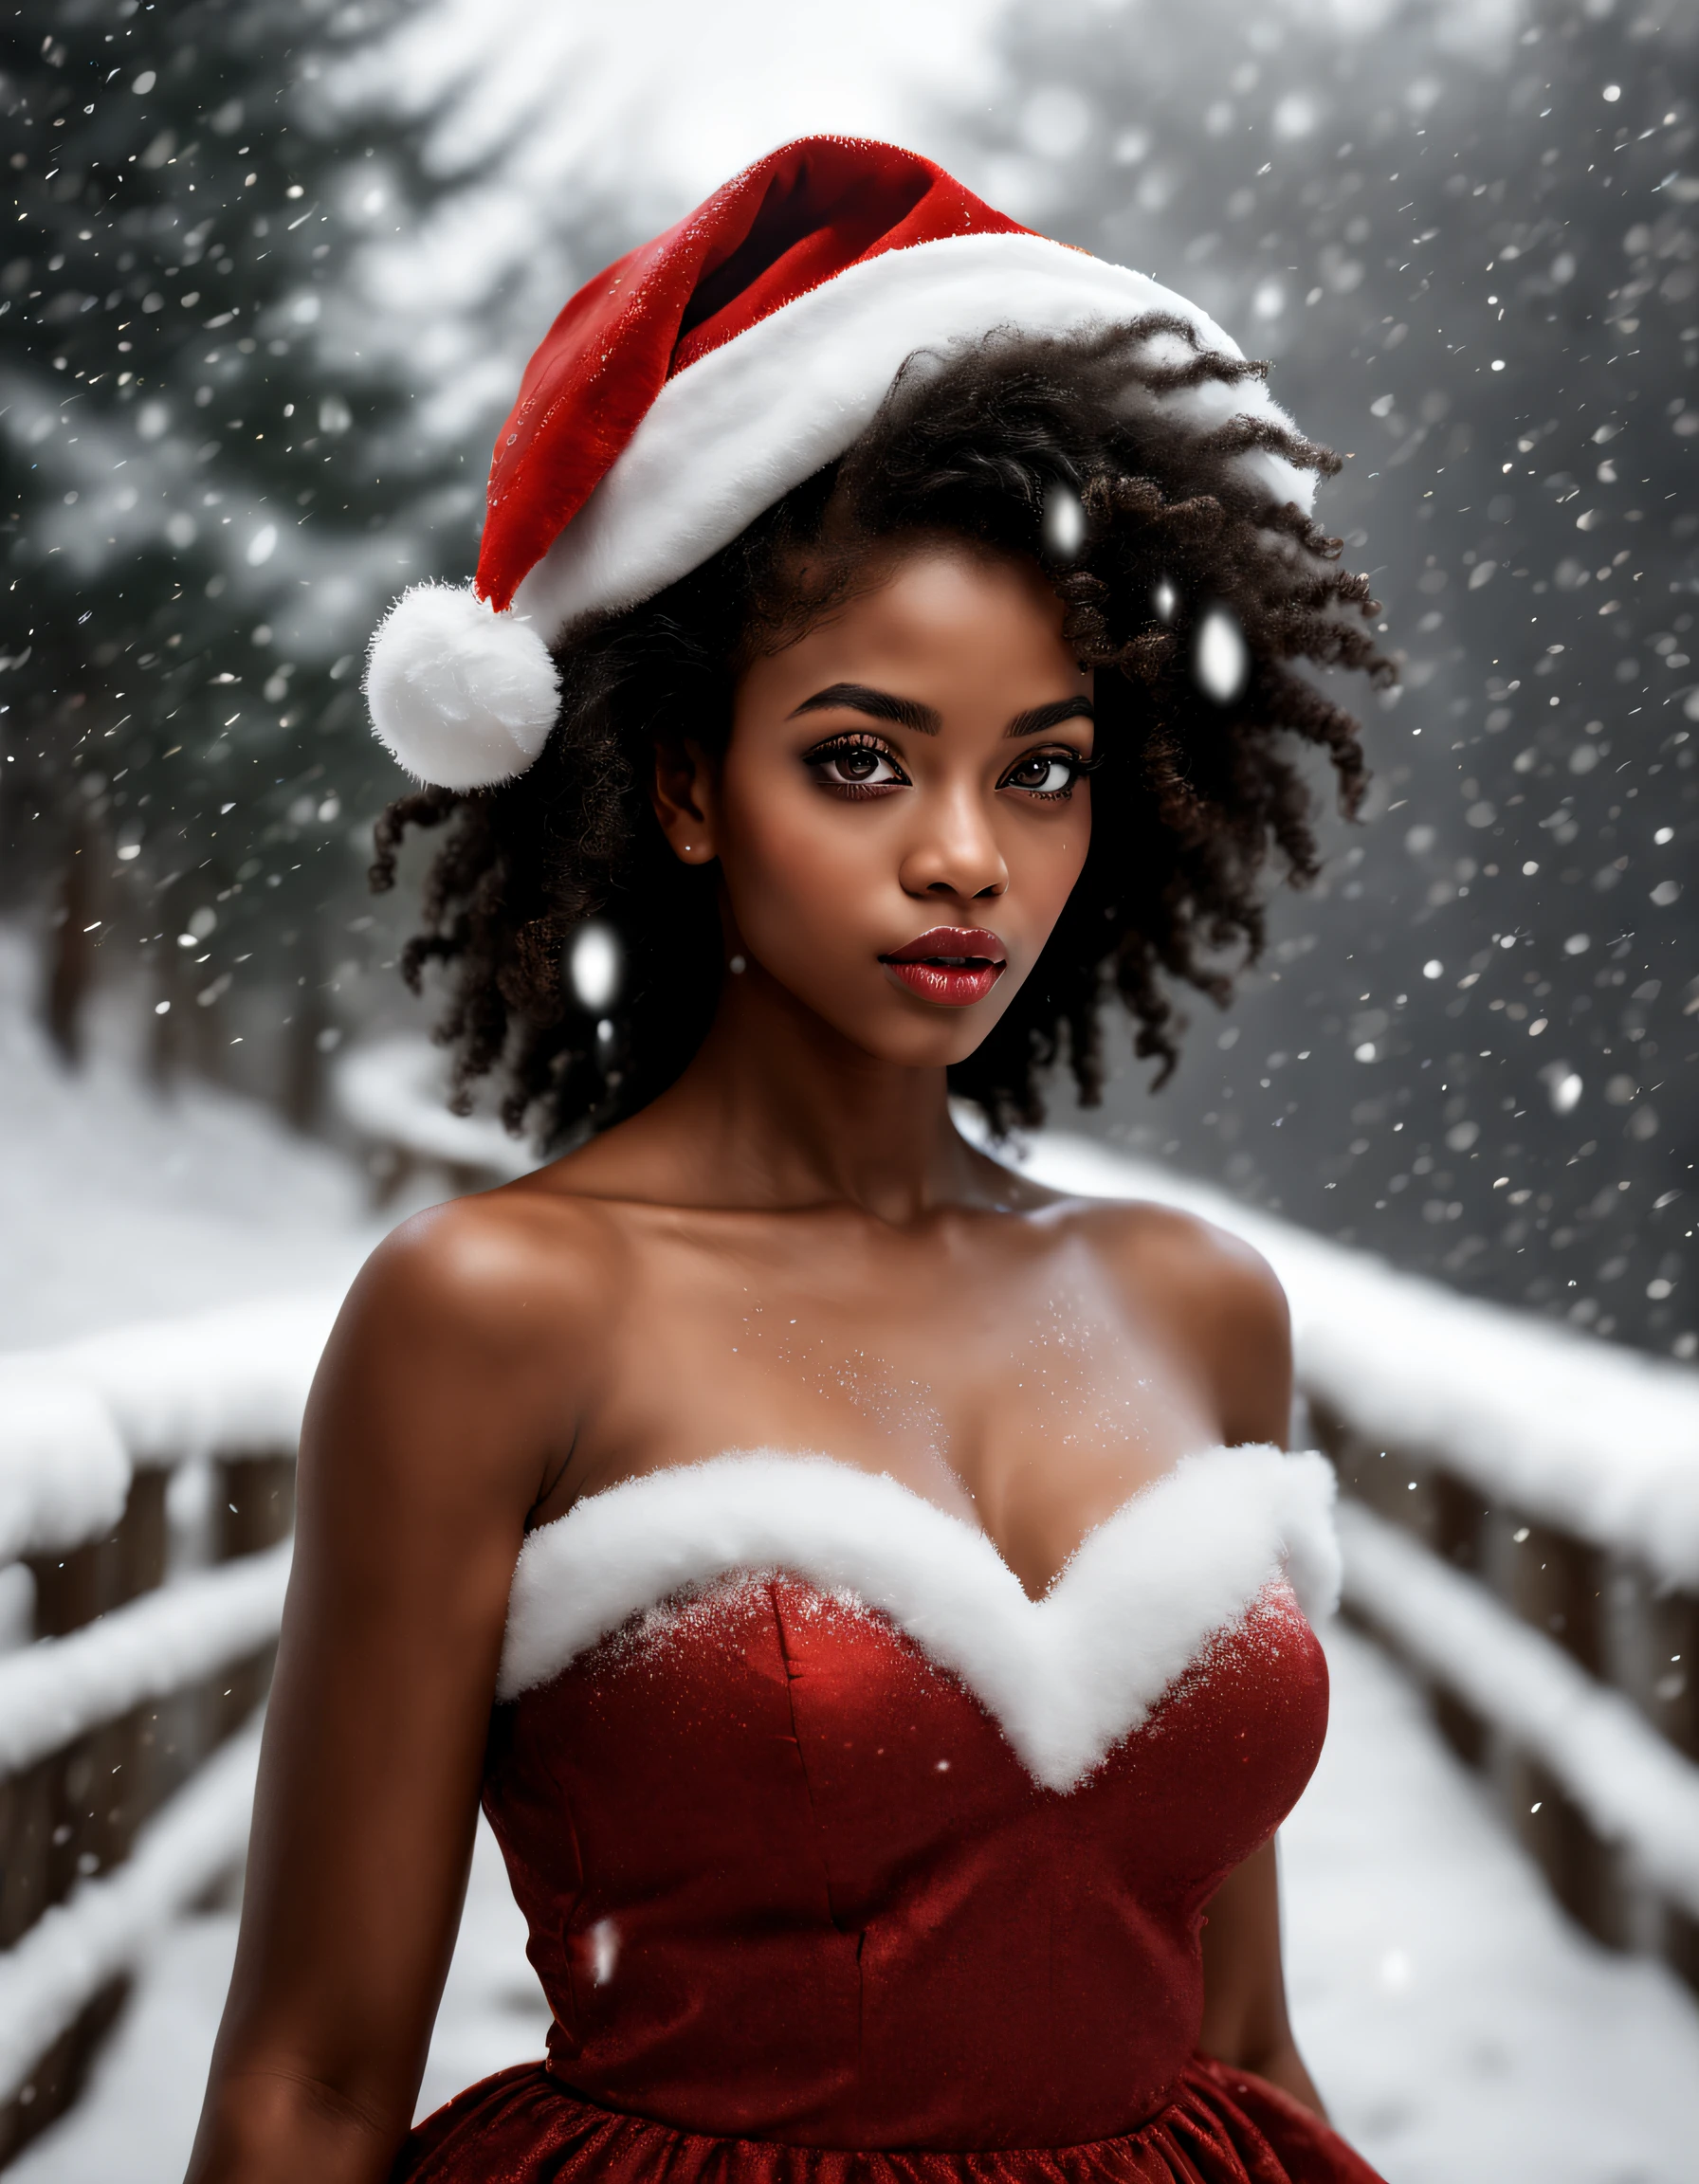 (更好的品質, 现实主义者: 1,37), 女人黑皮膚非洲詳細的臉, 美麗細緻的棕色眼睛, 美麗細緻的嘴唇, 長睫毛, 聖誕老人帽子, 红色丝绸连衣裙, 雪從天而降, 冬天風景, 舒適的氛圍, 溫暖的照明, 蓬松的雪花, 平靜的表情, 細膩的筆觸, retrato 现实主义者, 鲜艳的色彩, 节日主题